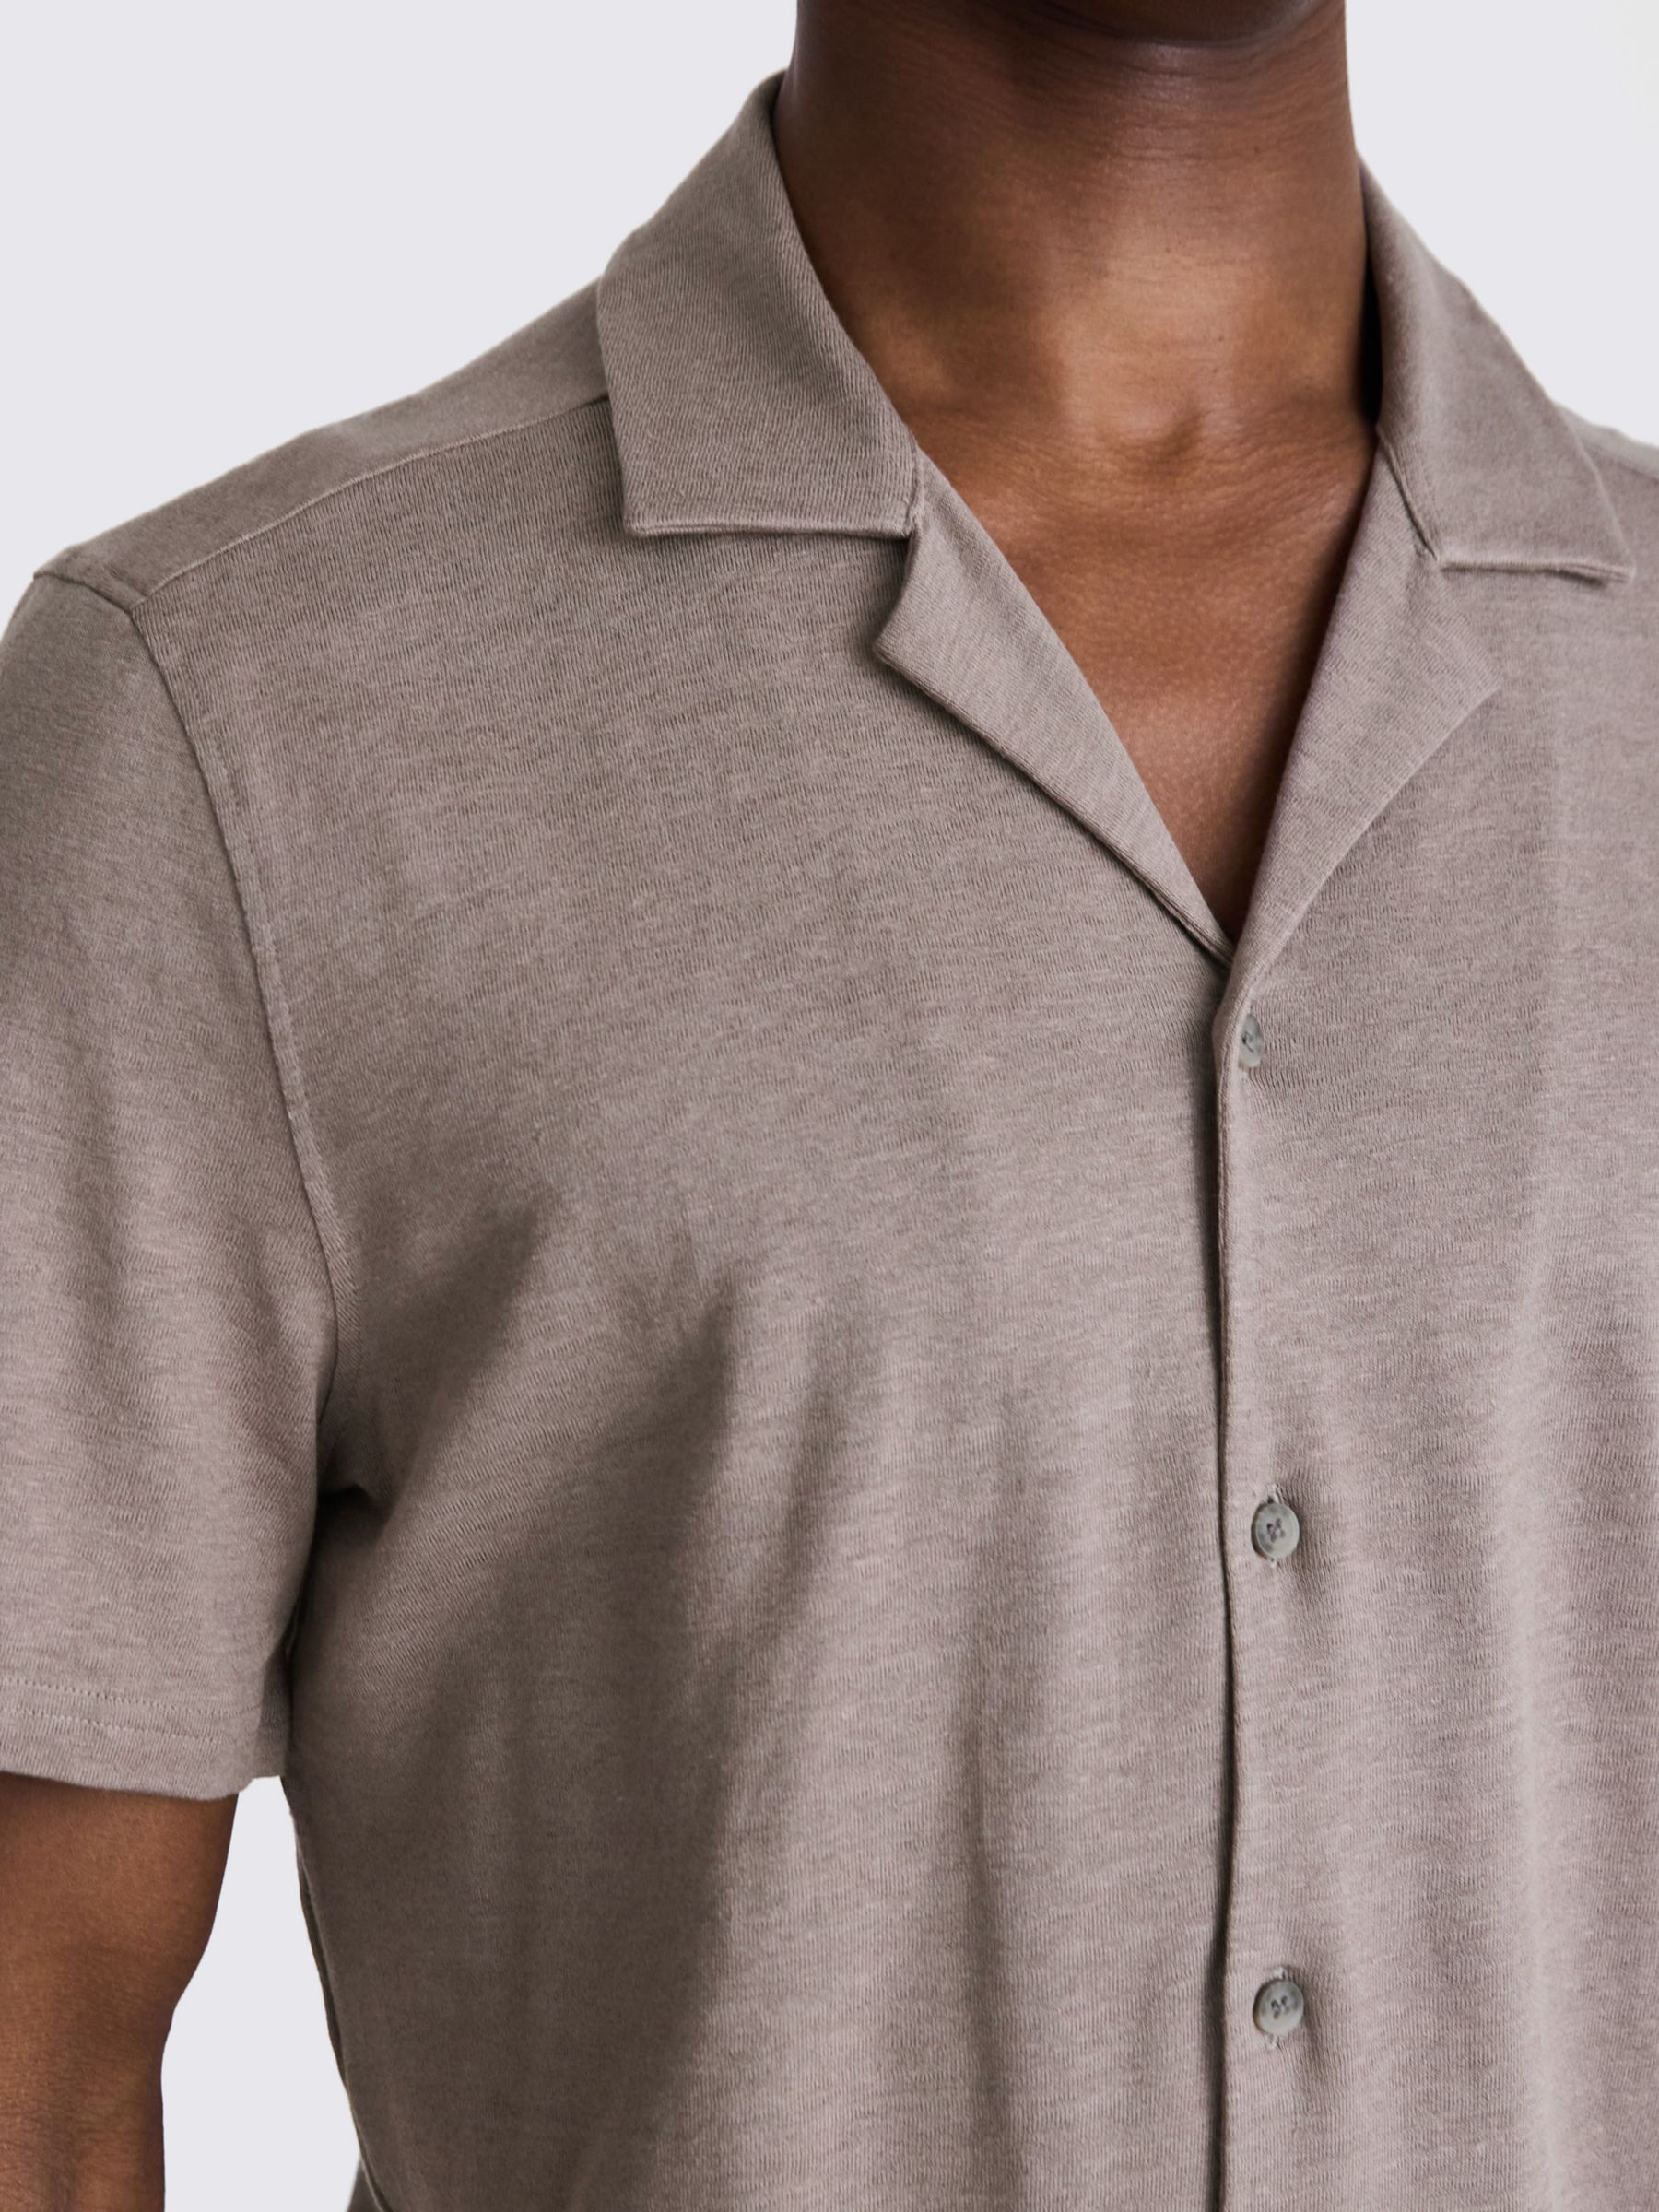 Moss Linen Blend Knitted Cuban Collar Shirt, Beige, S